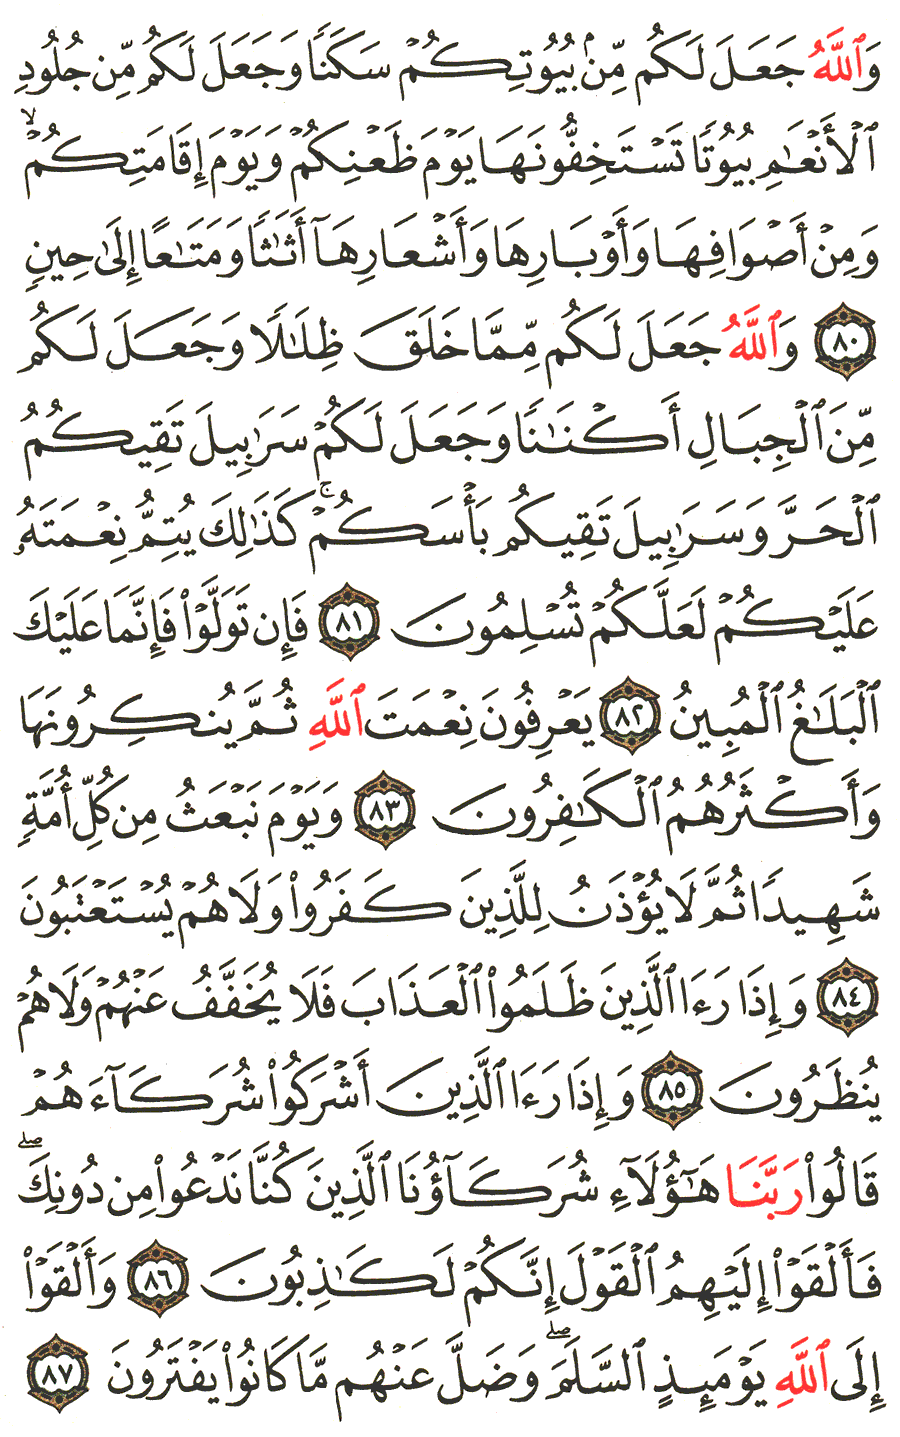 الصفحة رقم 276  من القرآن الكريم مكتوبة من المصحف